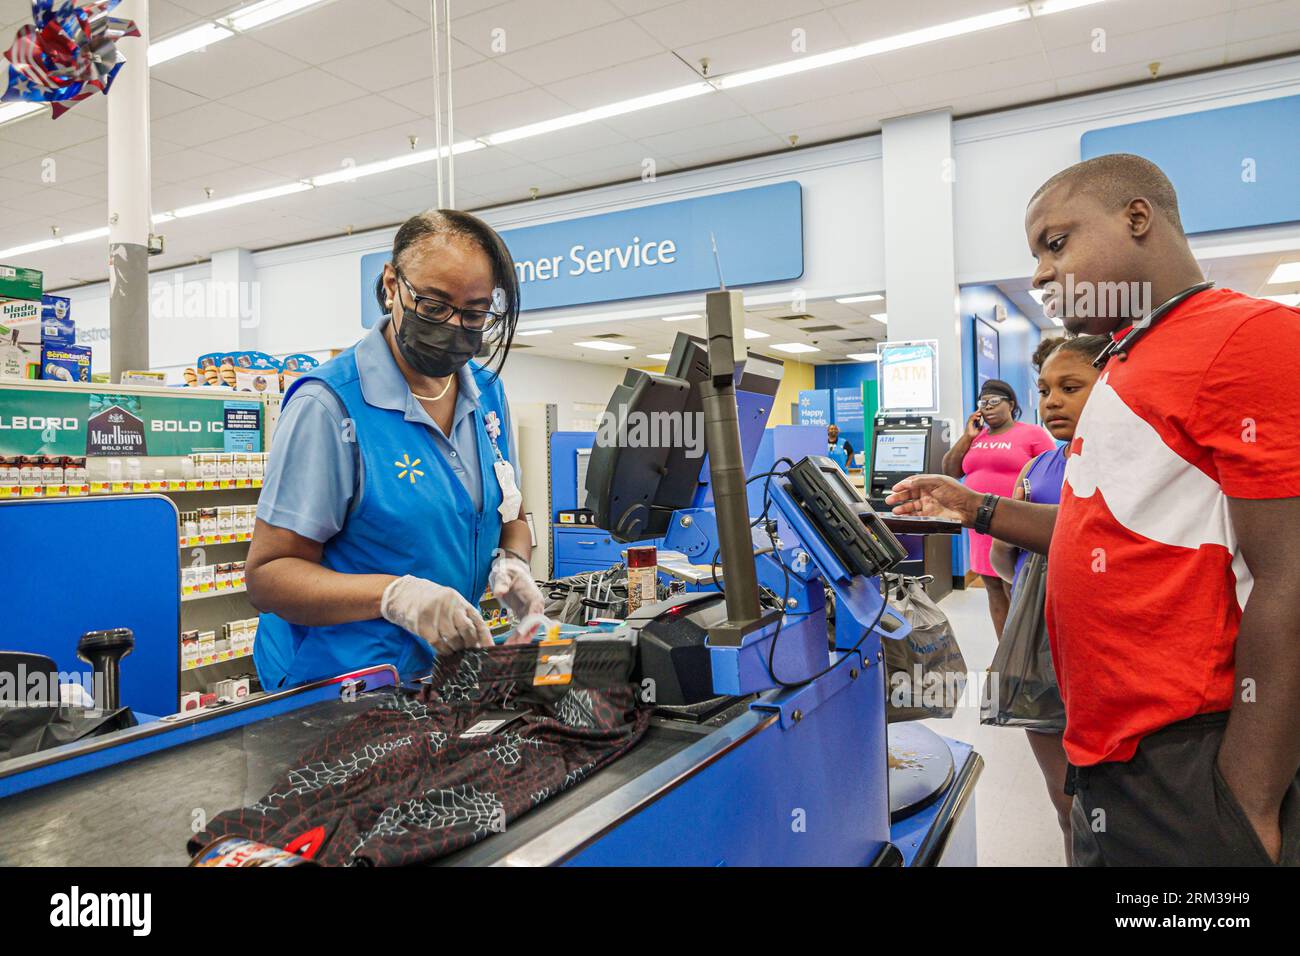 Augusta Géorgie, Walmart Supercenter Supercentre, grand magasin discount, ligne de paiement file d'attente clients vérifiant les achats payants, Noir Africain, ethni Banque D'Images